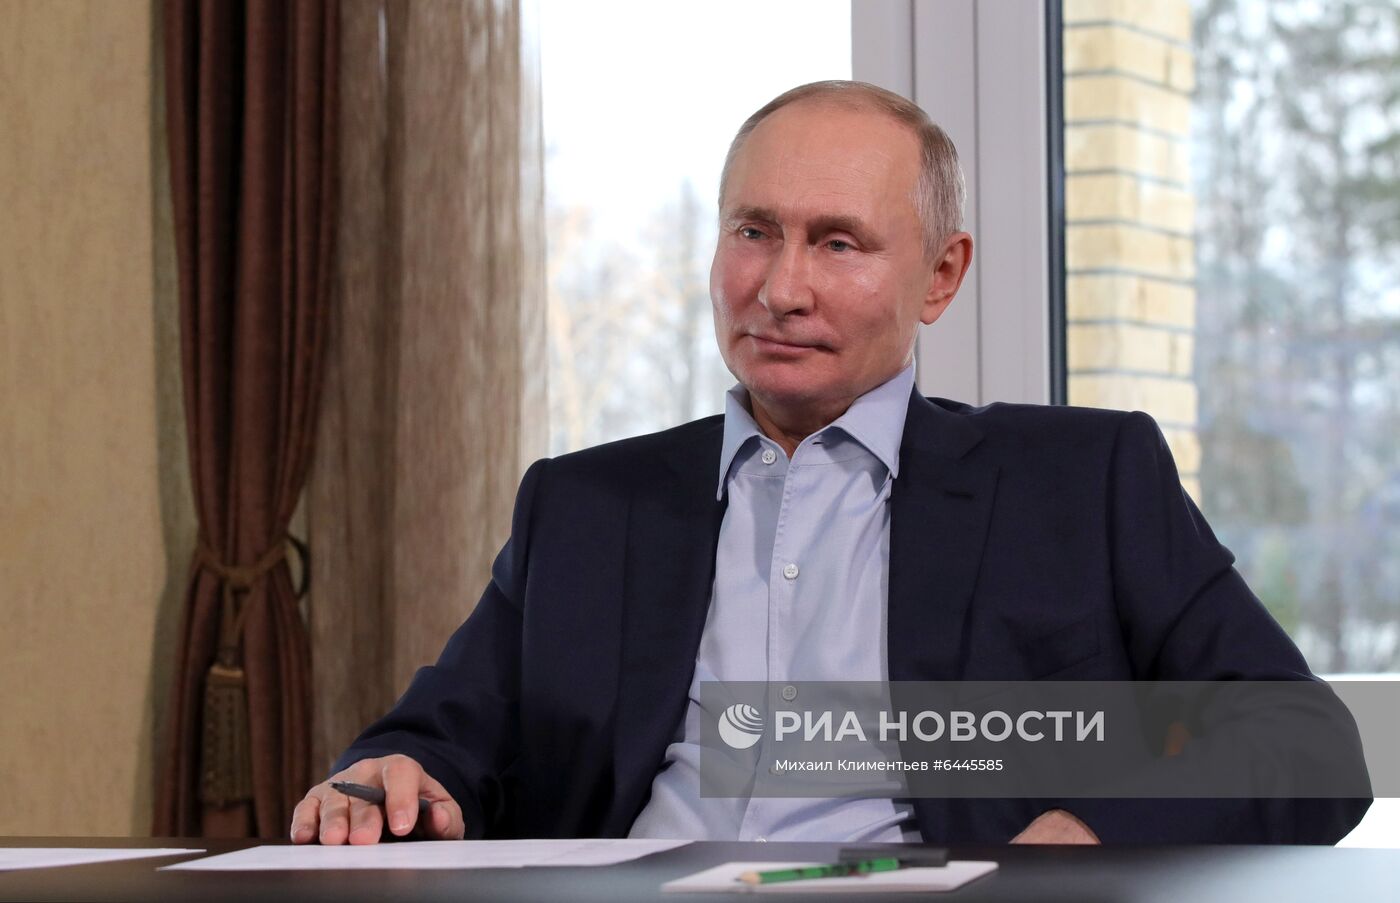 Президент РФ В. Путин провел встречу с учащимися вузов по случаю Дня российского студенчества